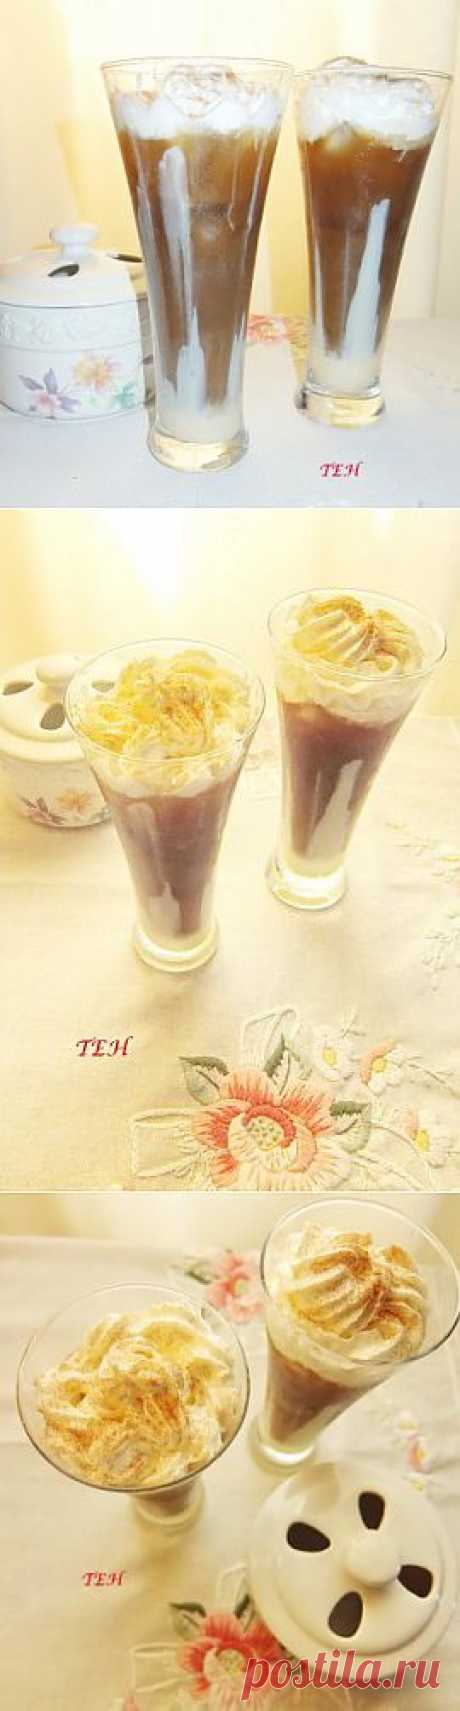 Кофе со льдом по-тайски (вариант №2) : Напитки безалкогольные